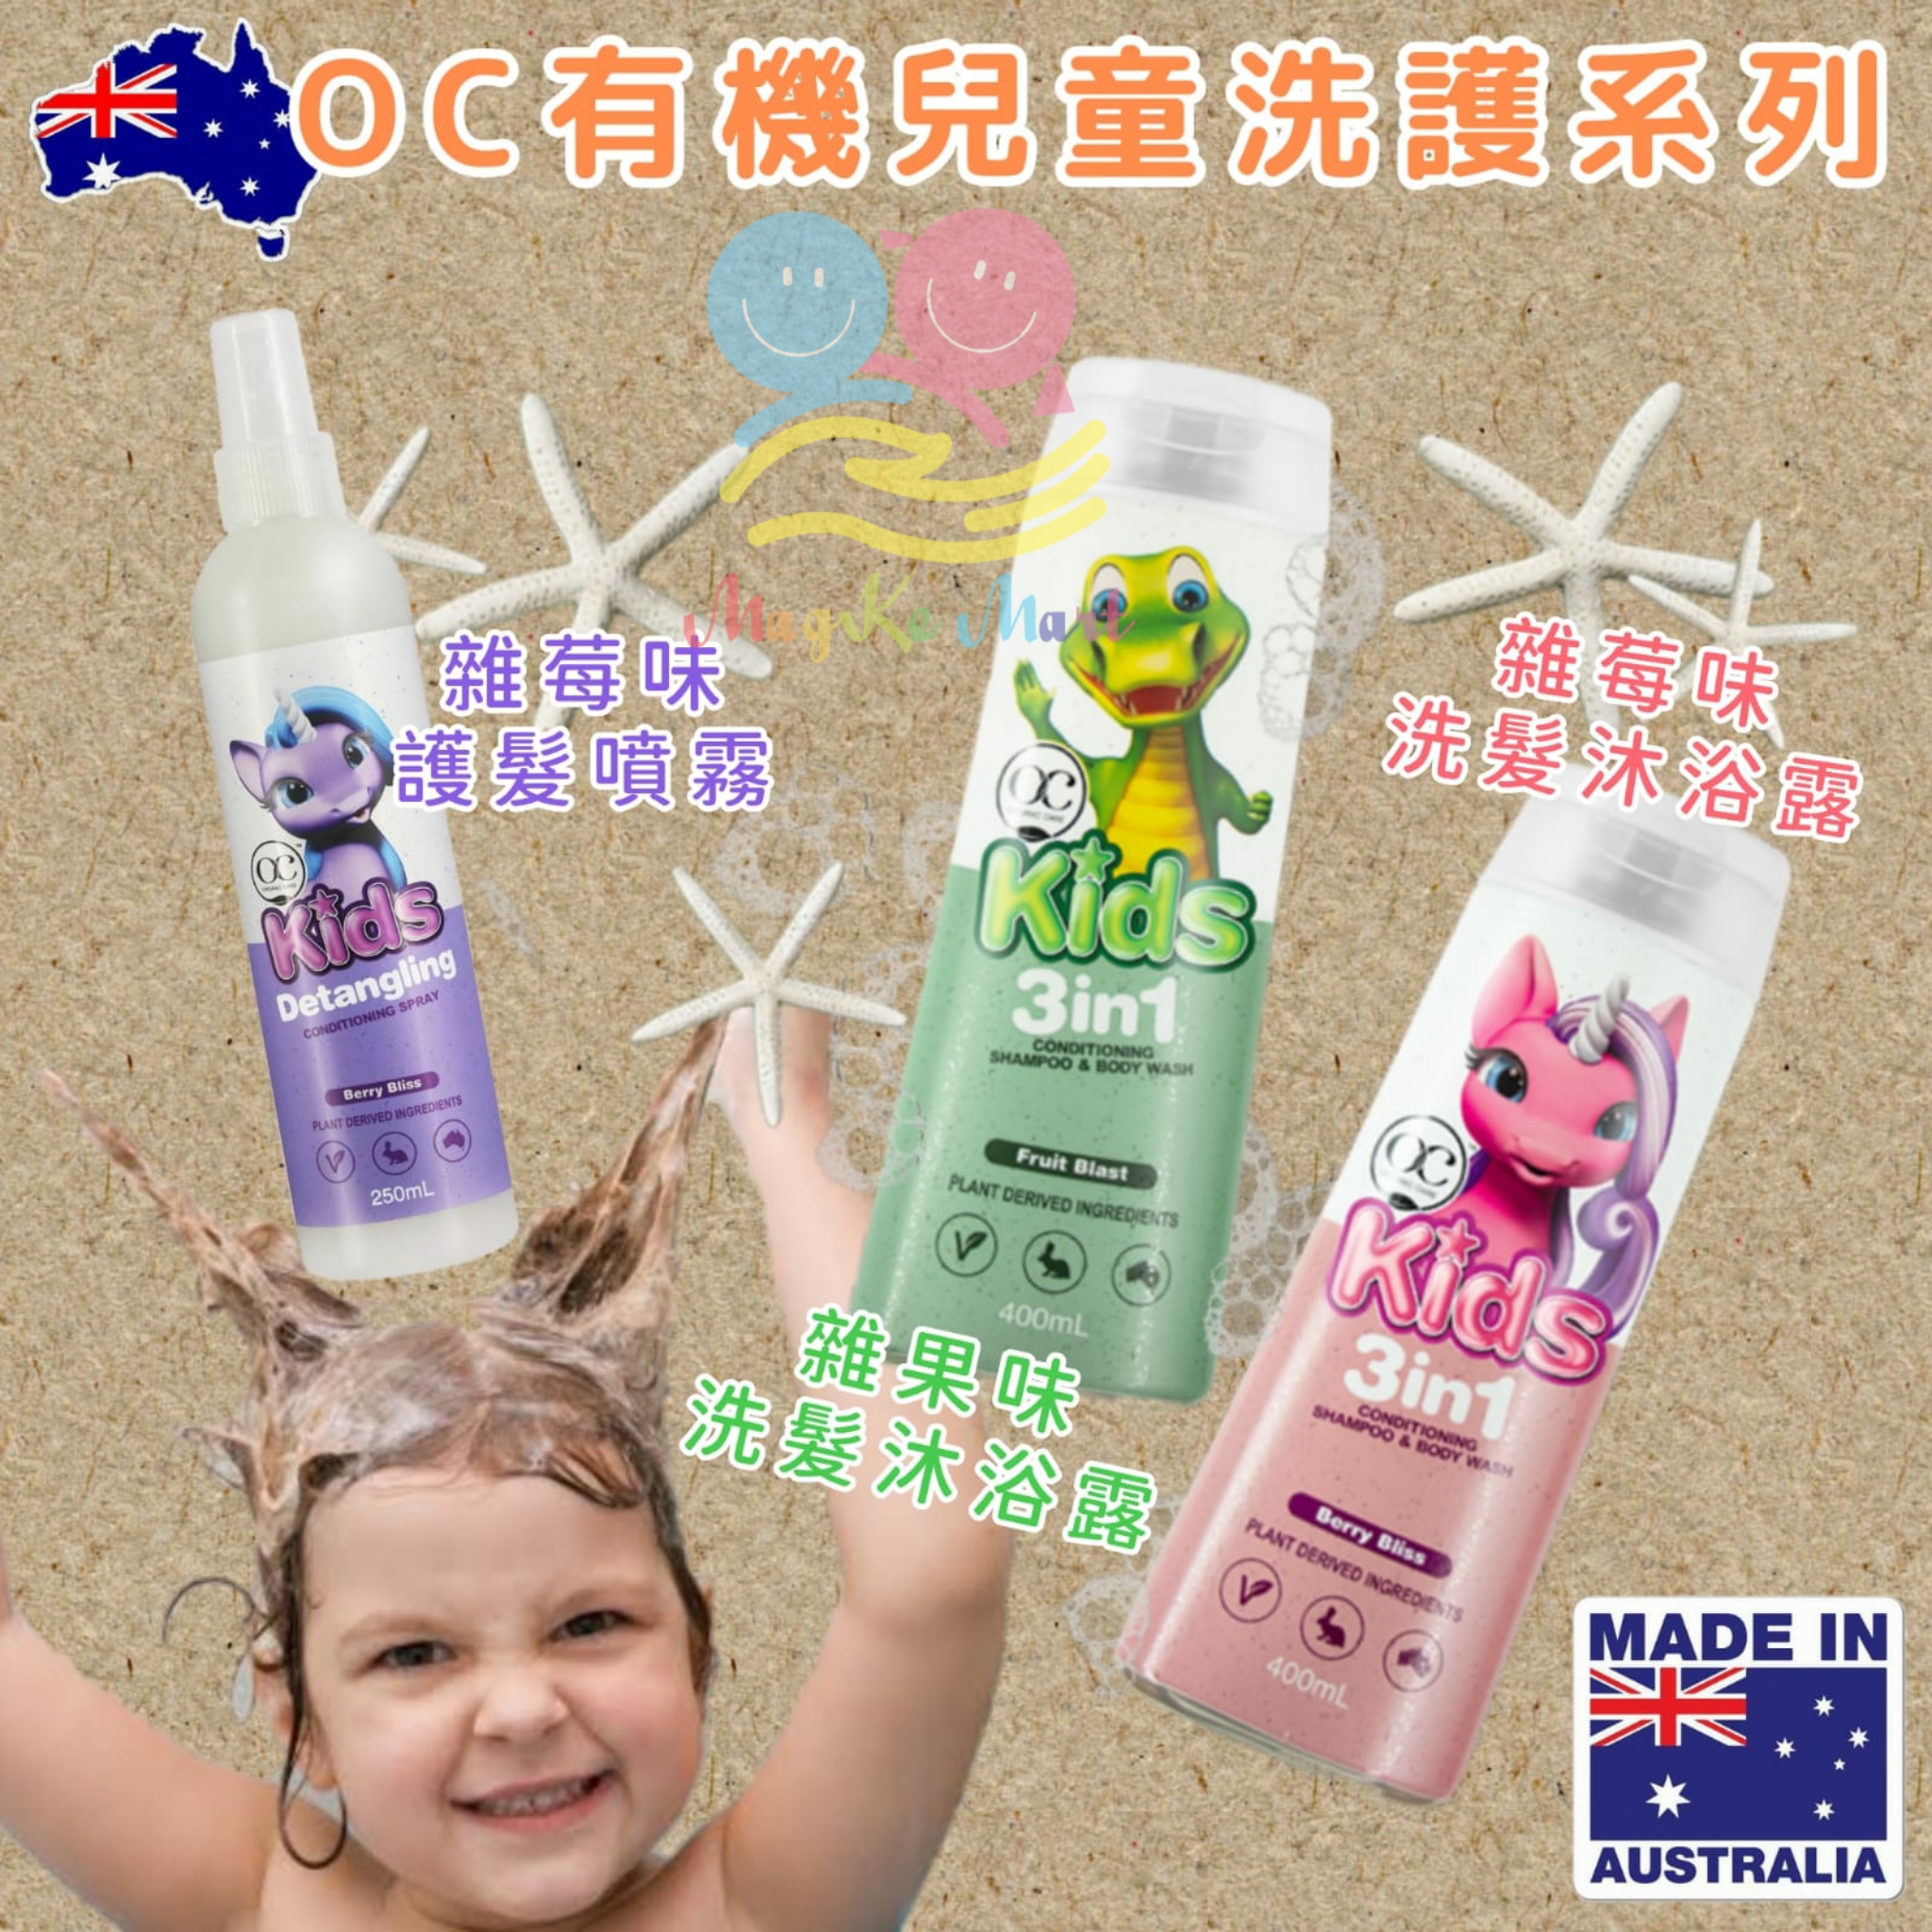 澳洲 OC 兒童專用有機洗護系列 (A) 粉紅色洗髮沐浴露(雜莓香味) 400ml